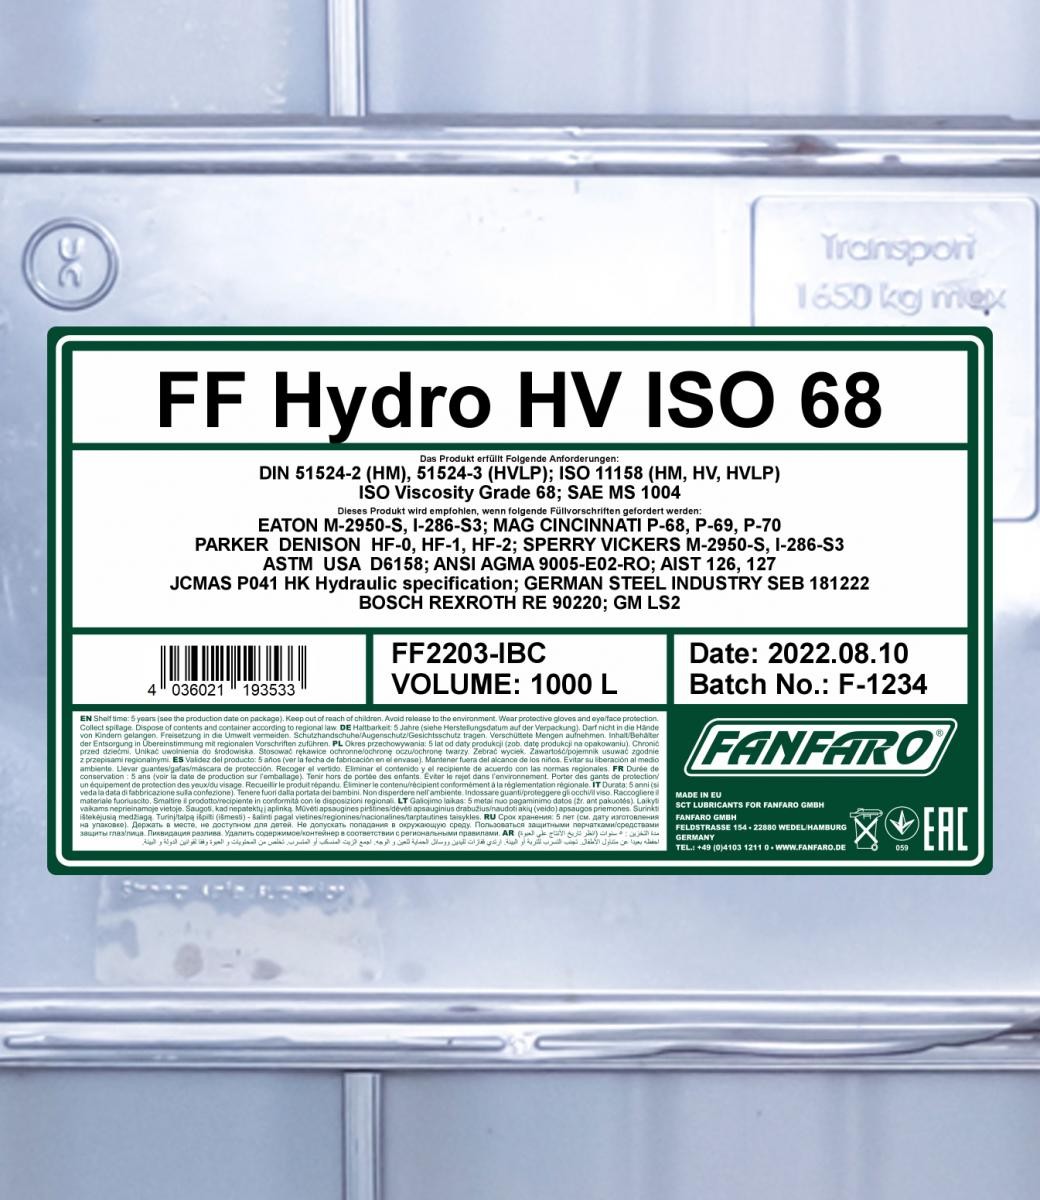 FANFARO Central Hydraulic Oil FF2203-IBC